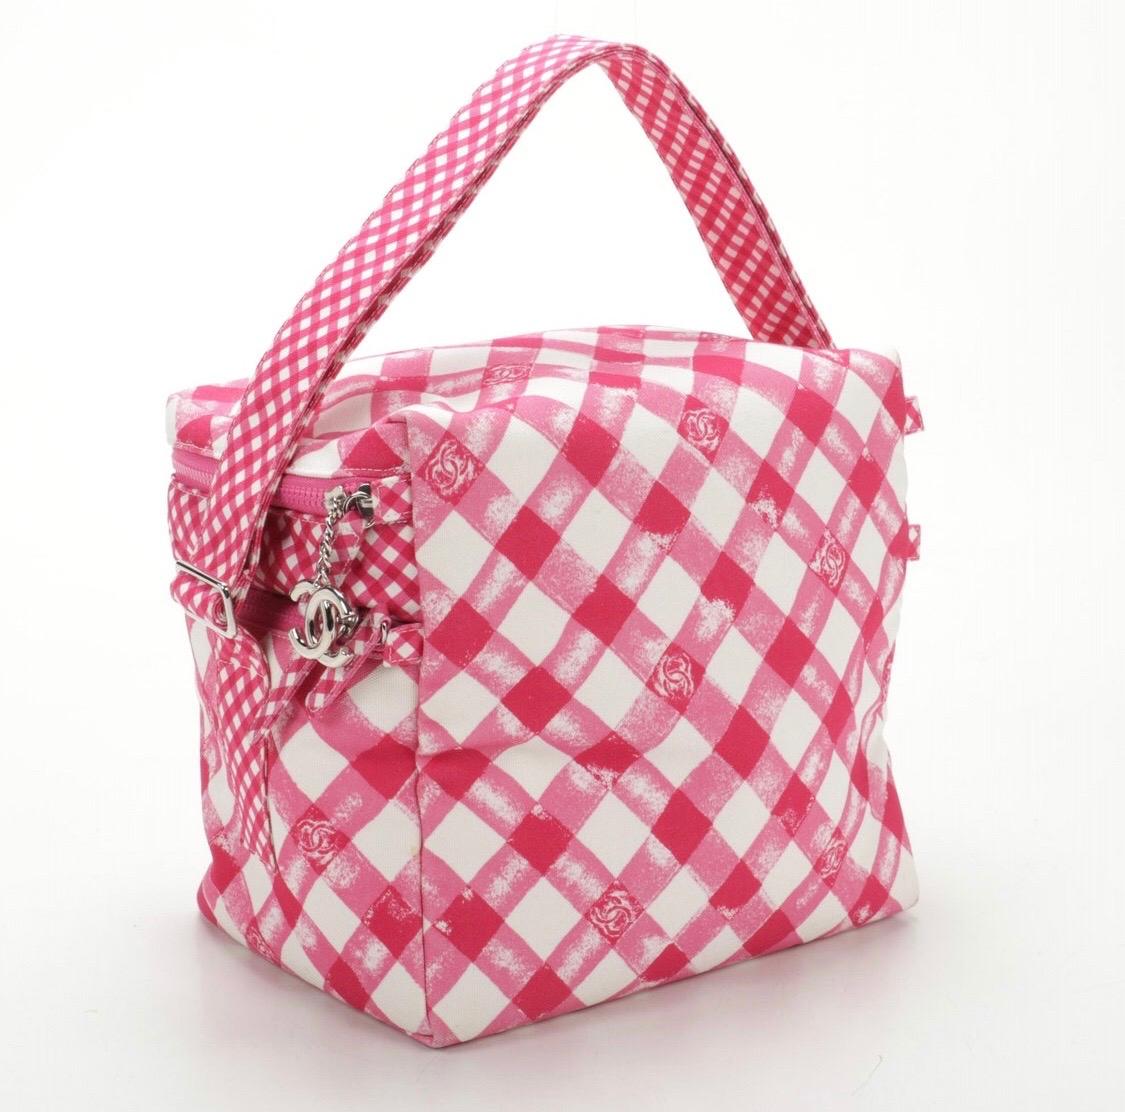 Chanel Lunch Box Shoulder Bag in Pink Gingham  1